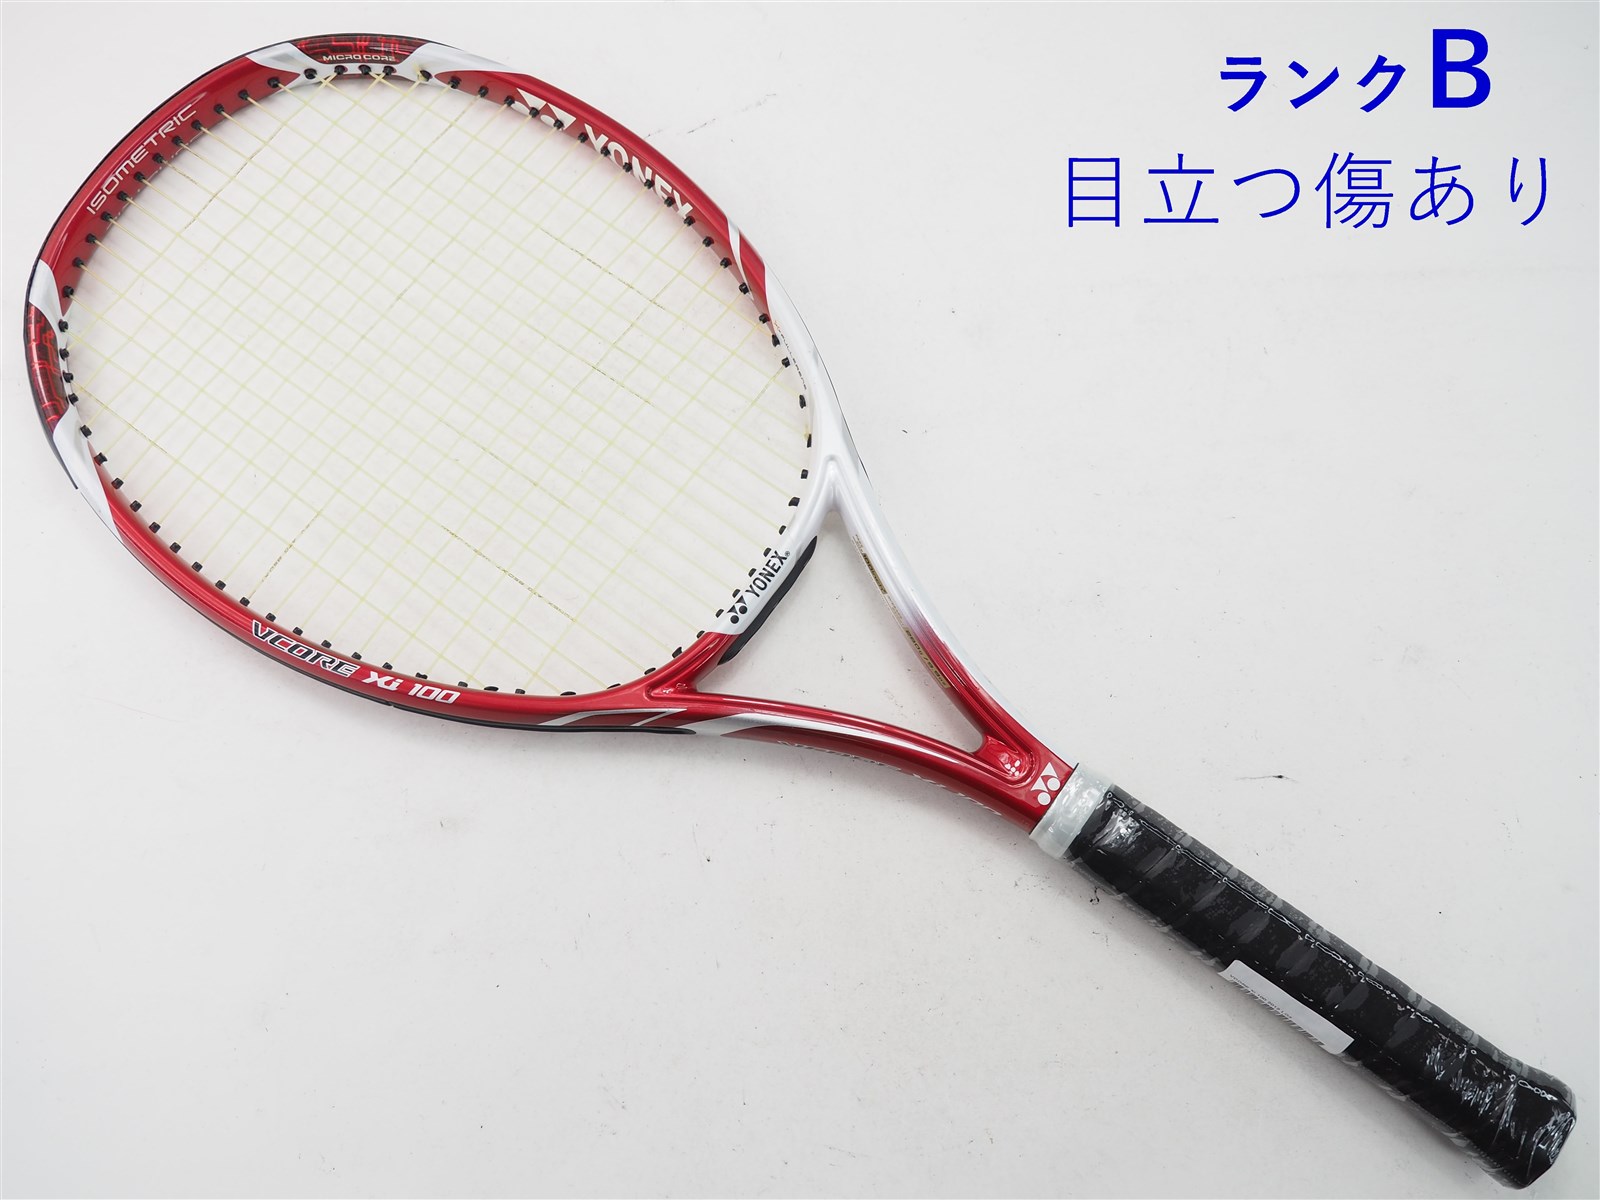 テニスラケット ヨネックス ブイコア エックスアイ 100 2012年モデル